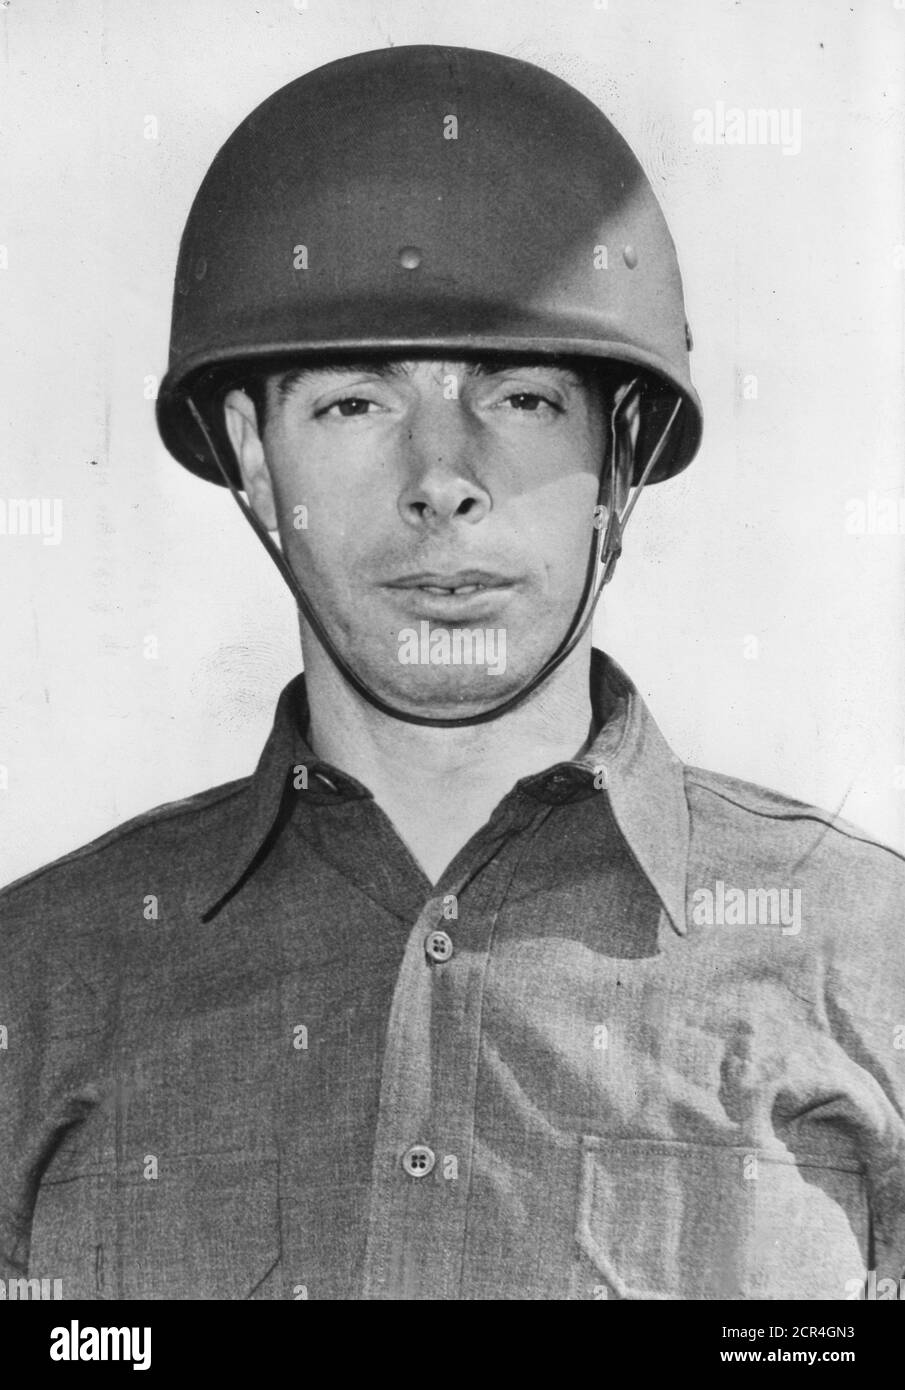 Primer plano del estadounidense Army privado y jugador de béisbol Joe DiMaggio (1914-1999),1943. (Foto de US Army/RBM Vintage Images) Foto de stock